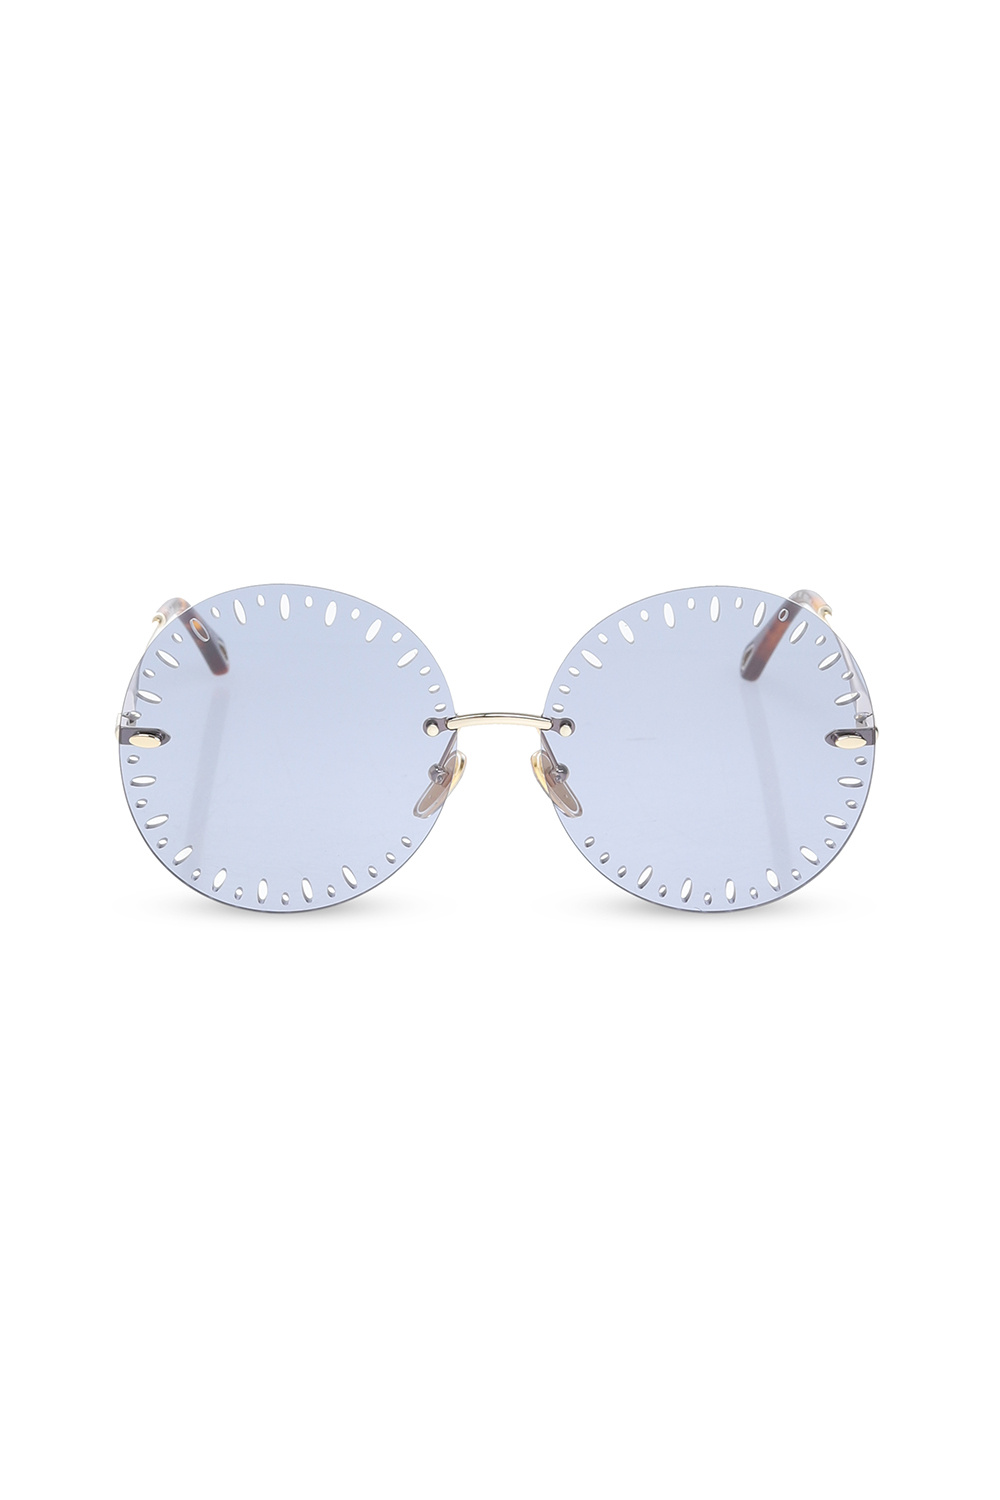 Chloé buy emporio armani 0ea2087 square Passage sunglasses